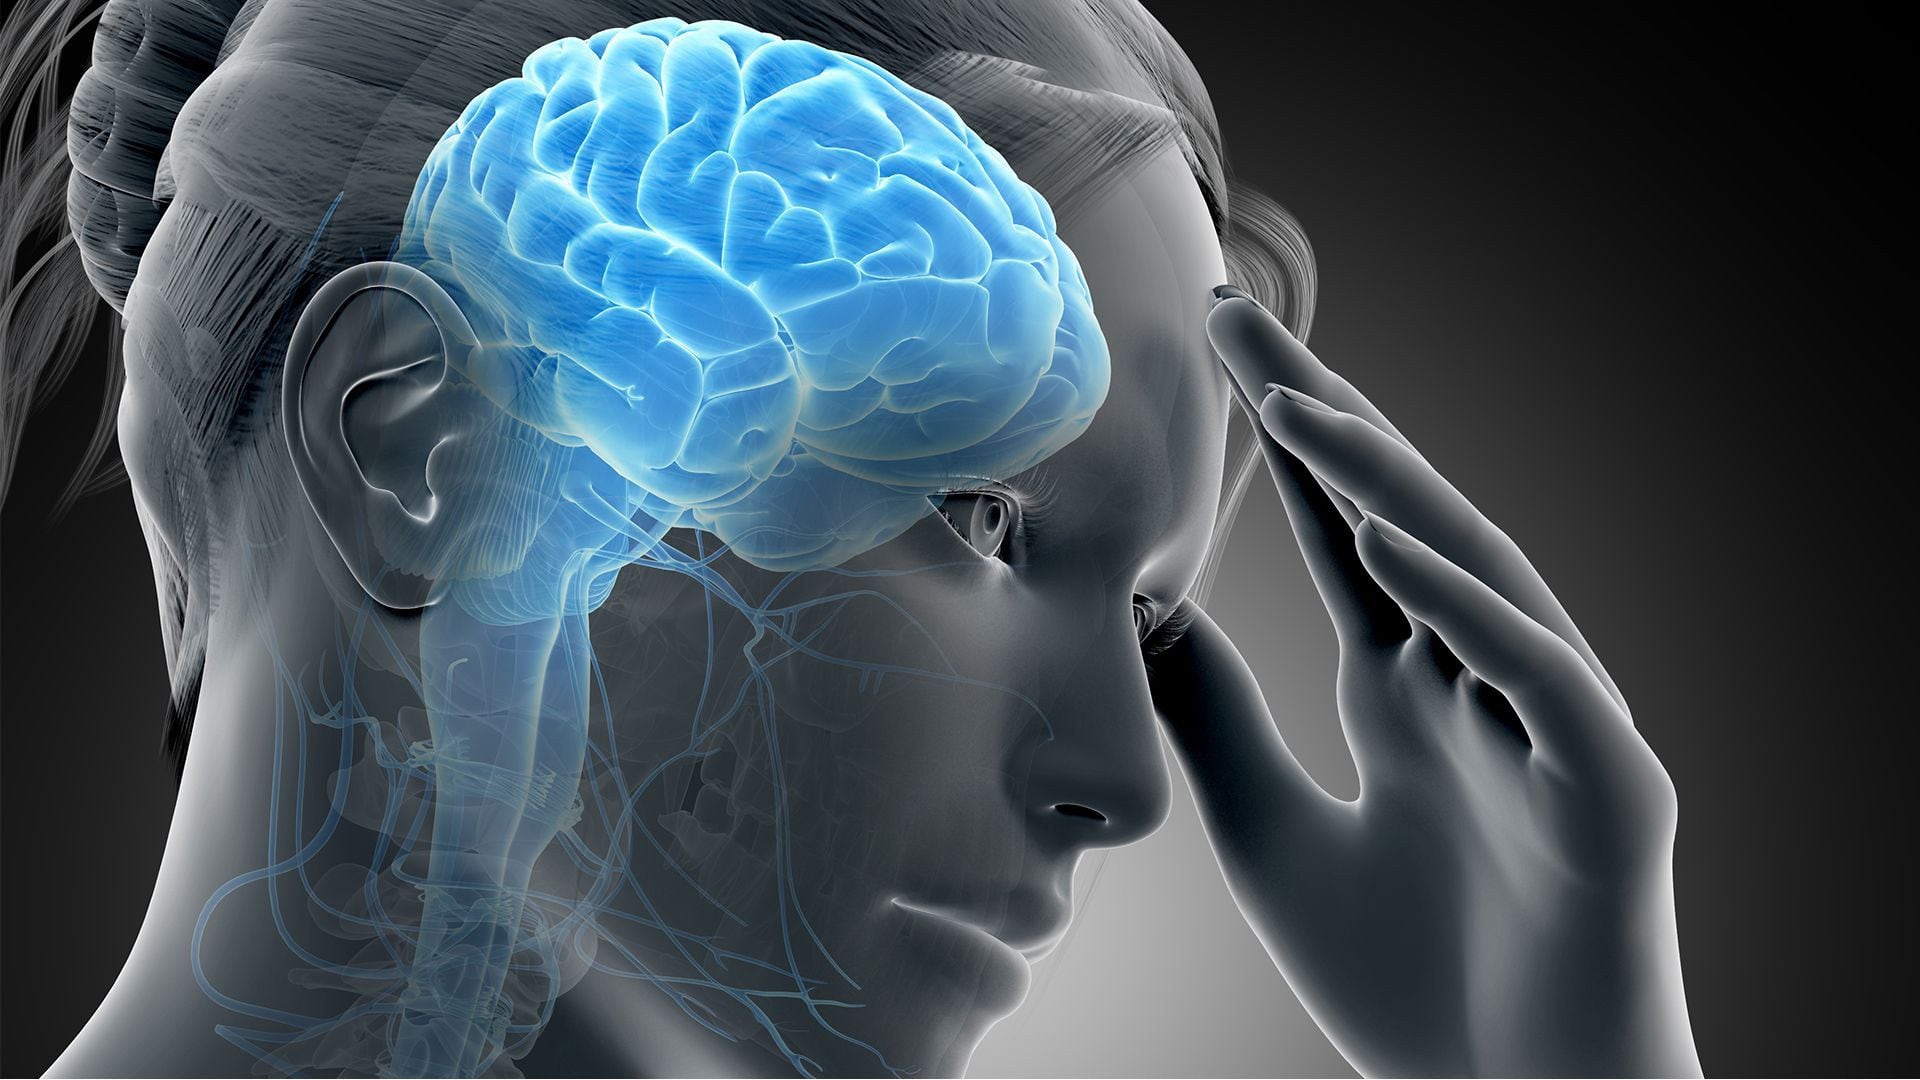 La sobredosis natural de anandamida en la cabeza de la mujer estudiada diluiría el mensaje doloroso en el cerebro (Foto: Archivo)